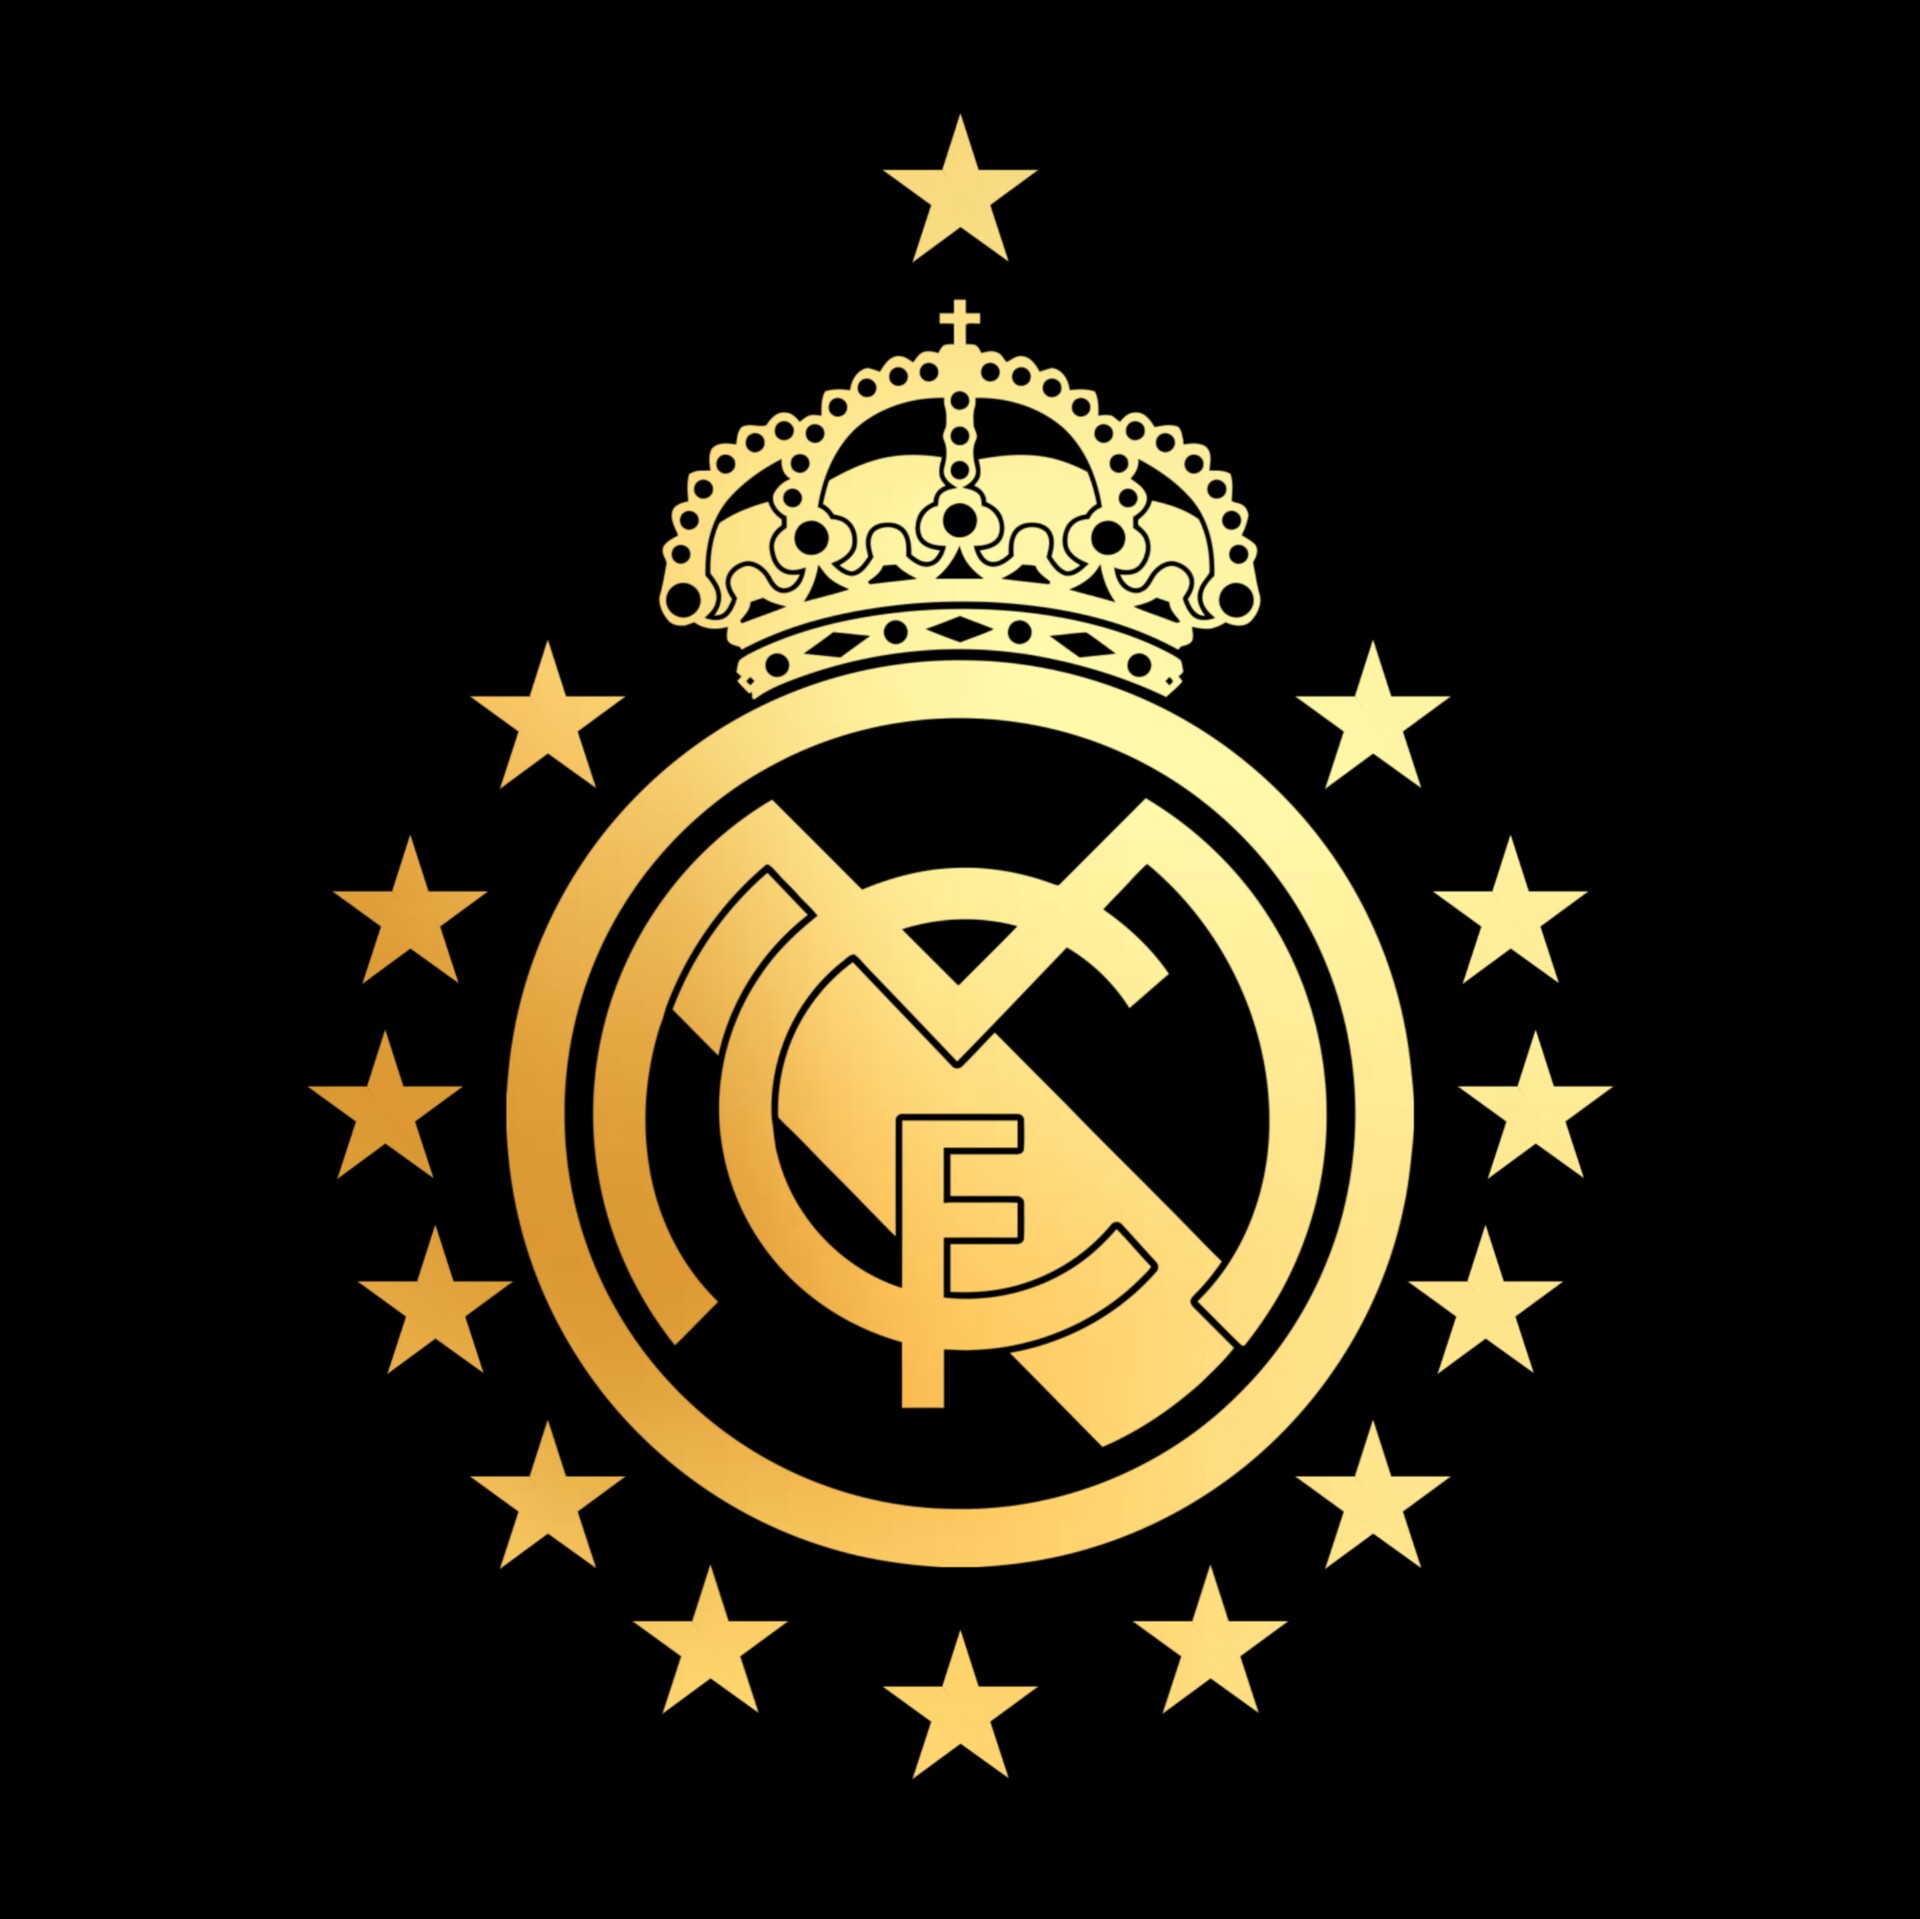 ArtStation - Real Madrid logo - Champions Stars 14